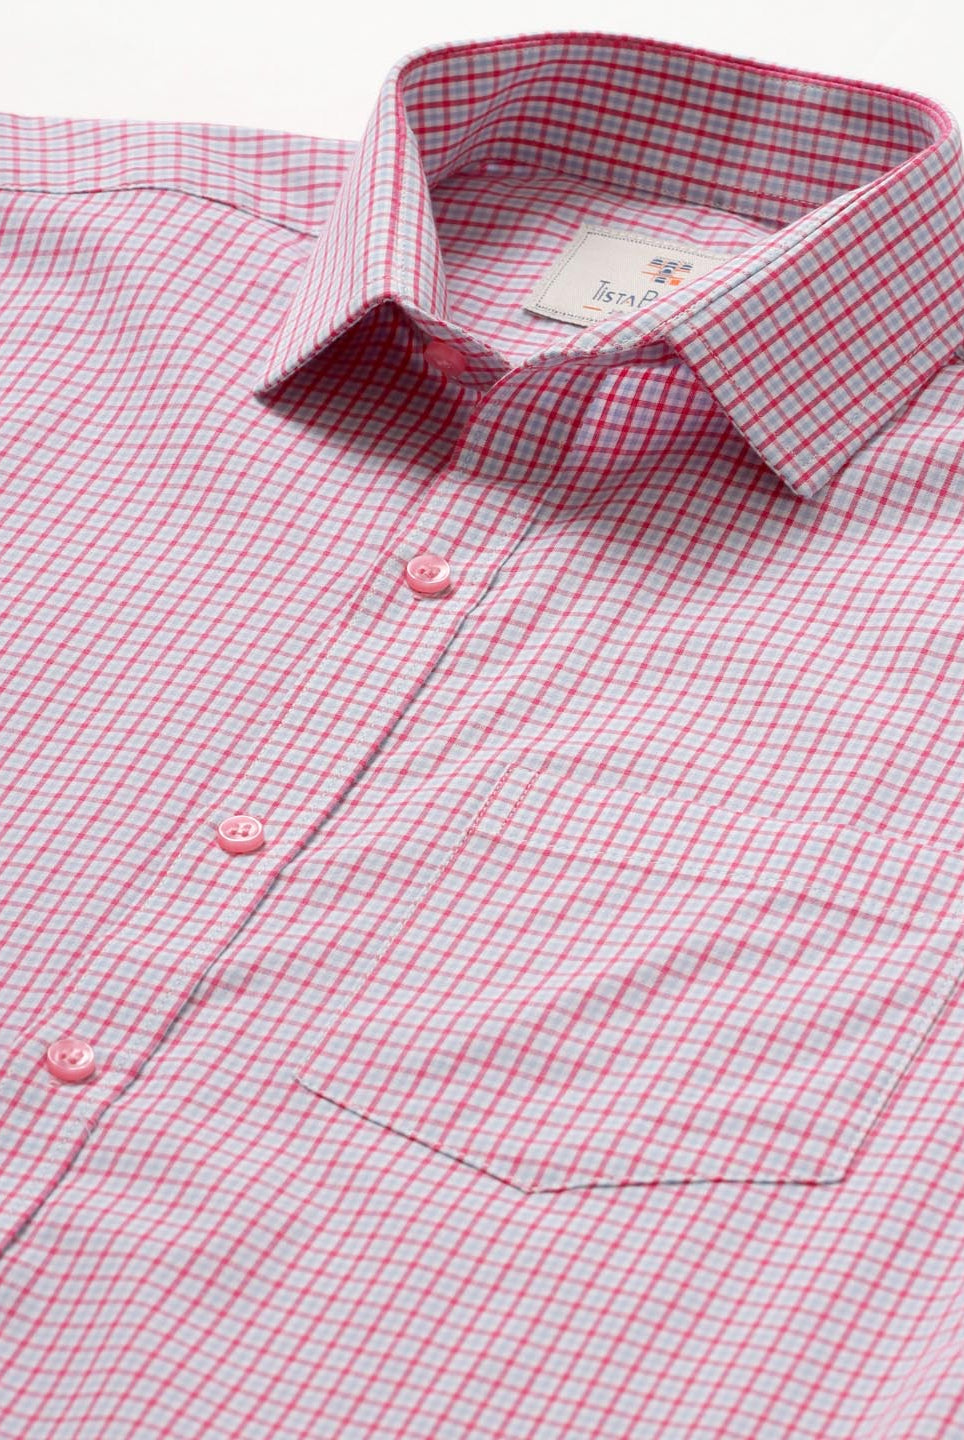 pink check shirt